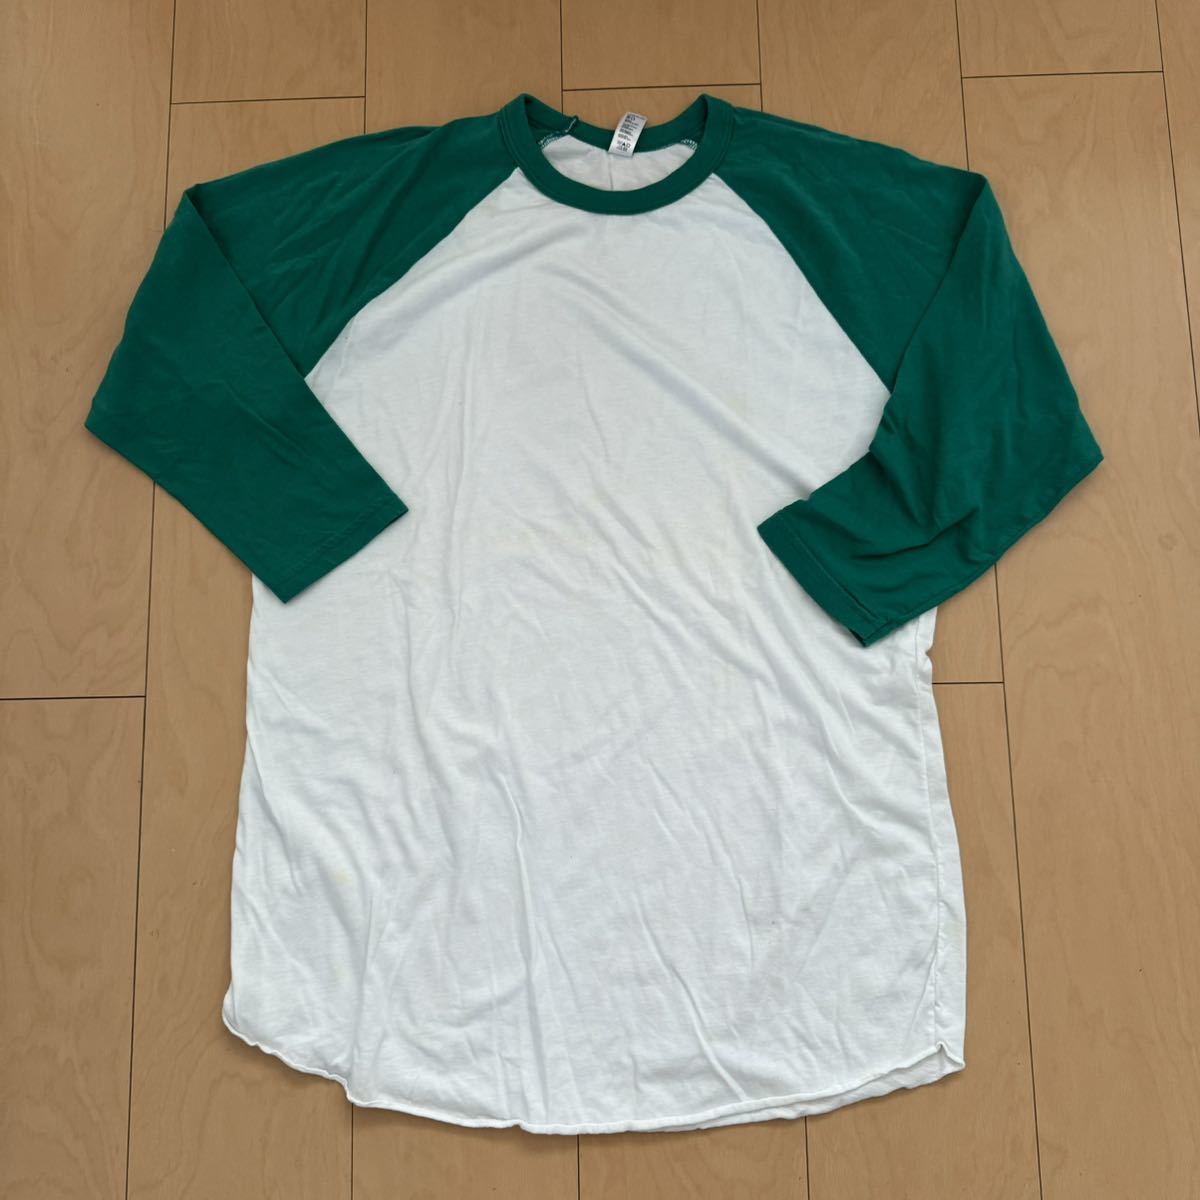 激レア! アメリカンアパレル ラグラン 5分袖Tシャツ ホワイト×グリーン サイズL 美品格安_画像1